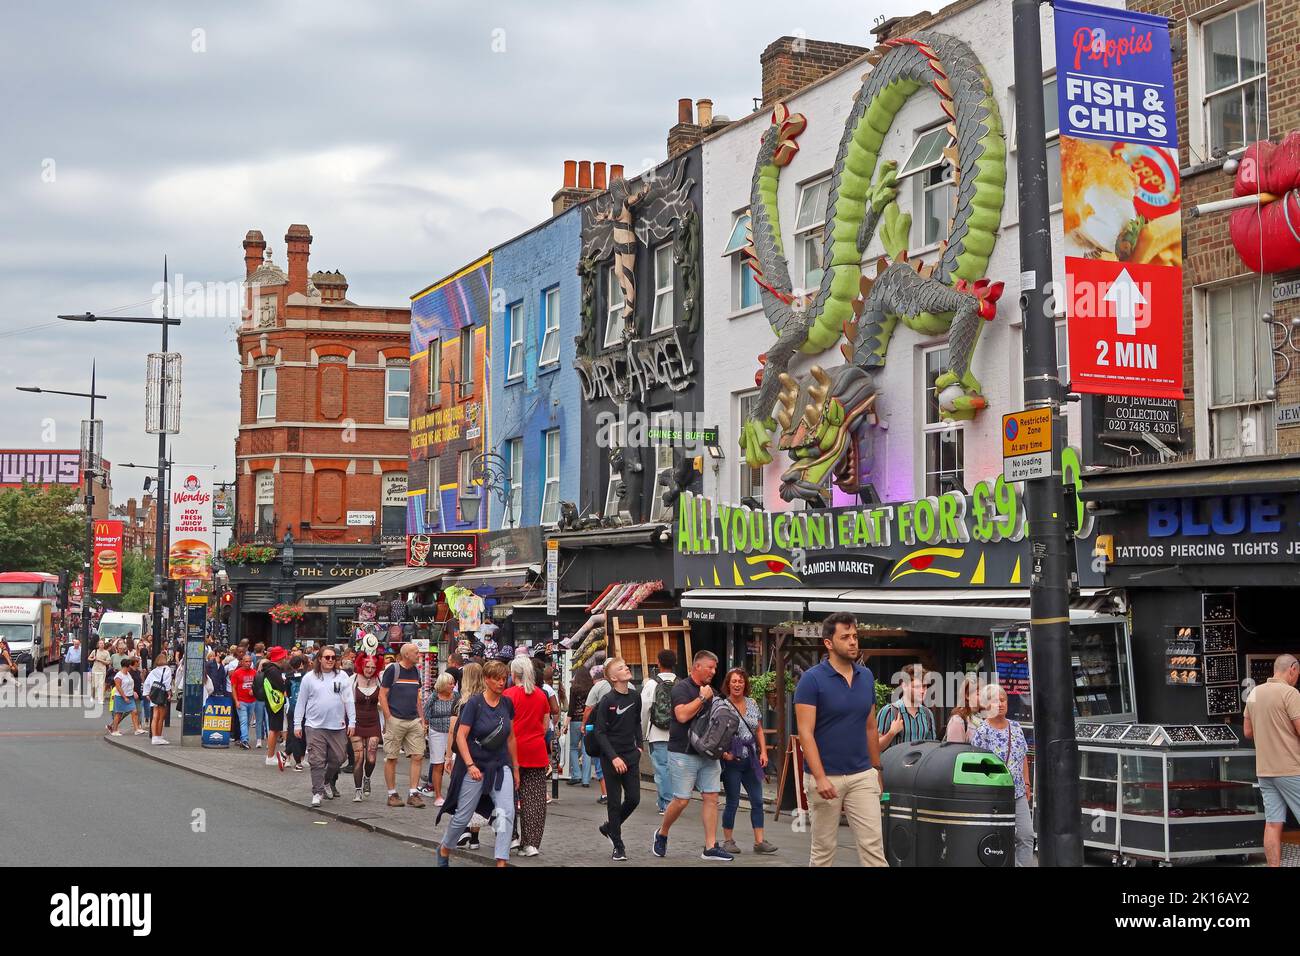 Magasins avec touristes et acheteurs, à Camden High Street, Camden Town, Londres, Angleterre, Royaume-Uni, NW1 8QR Banque D'Images